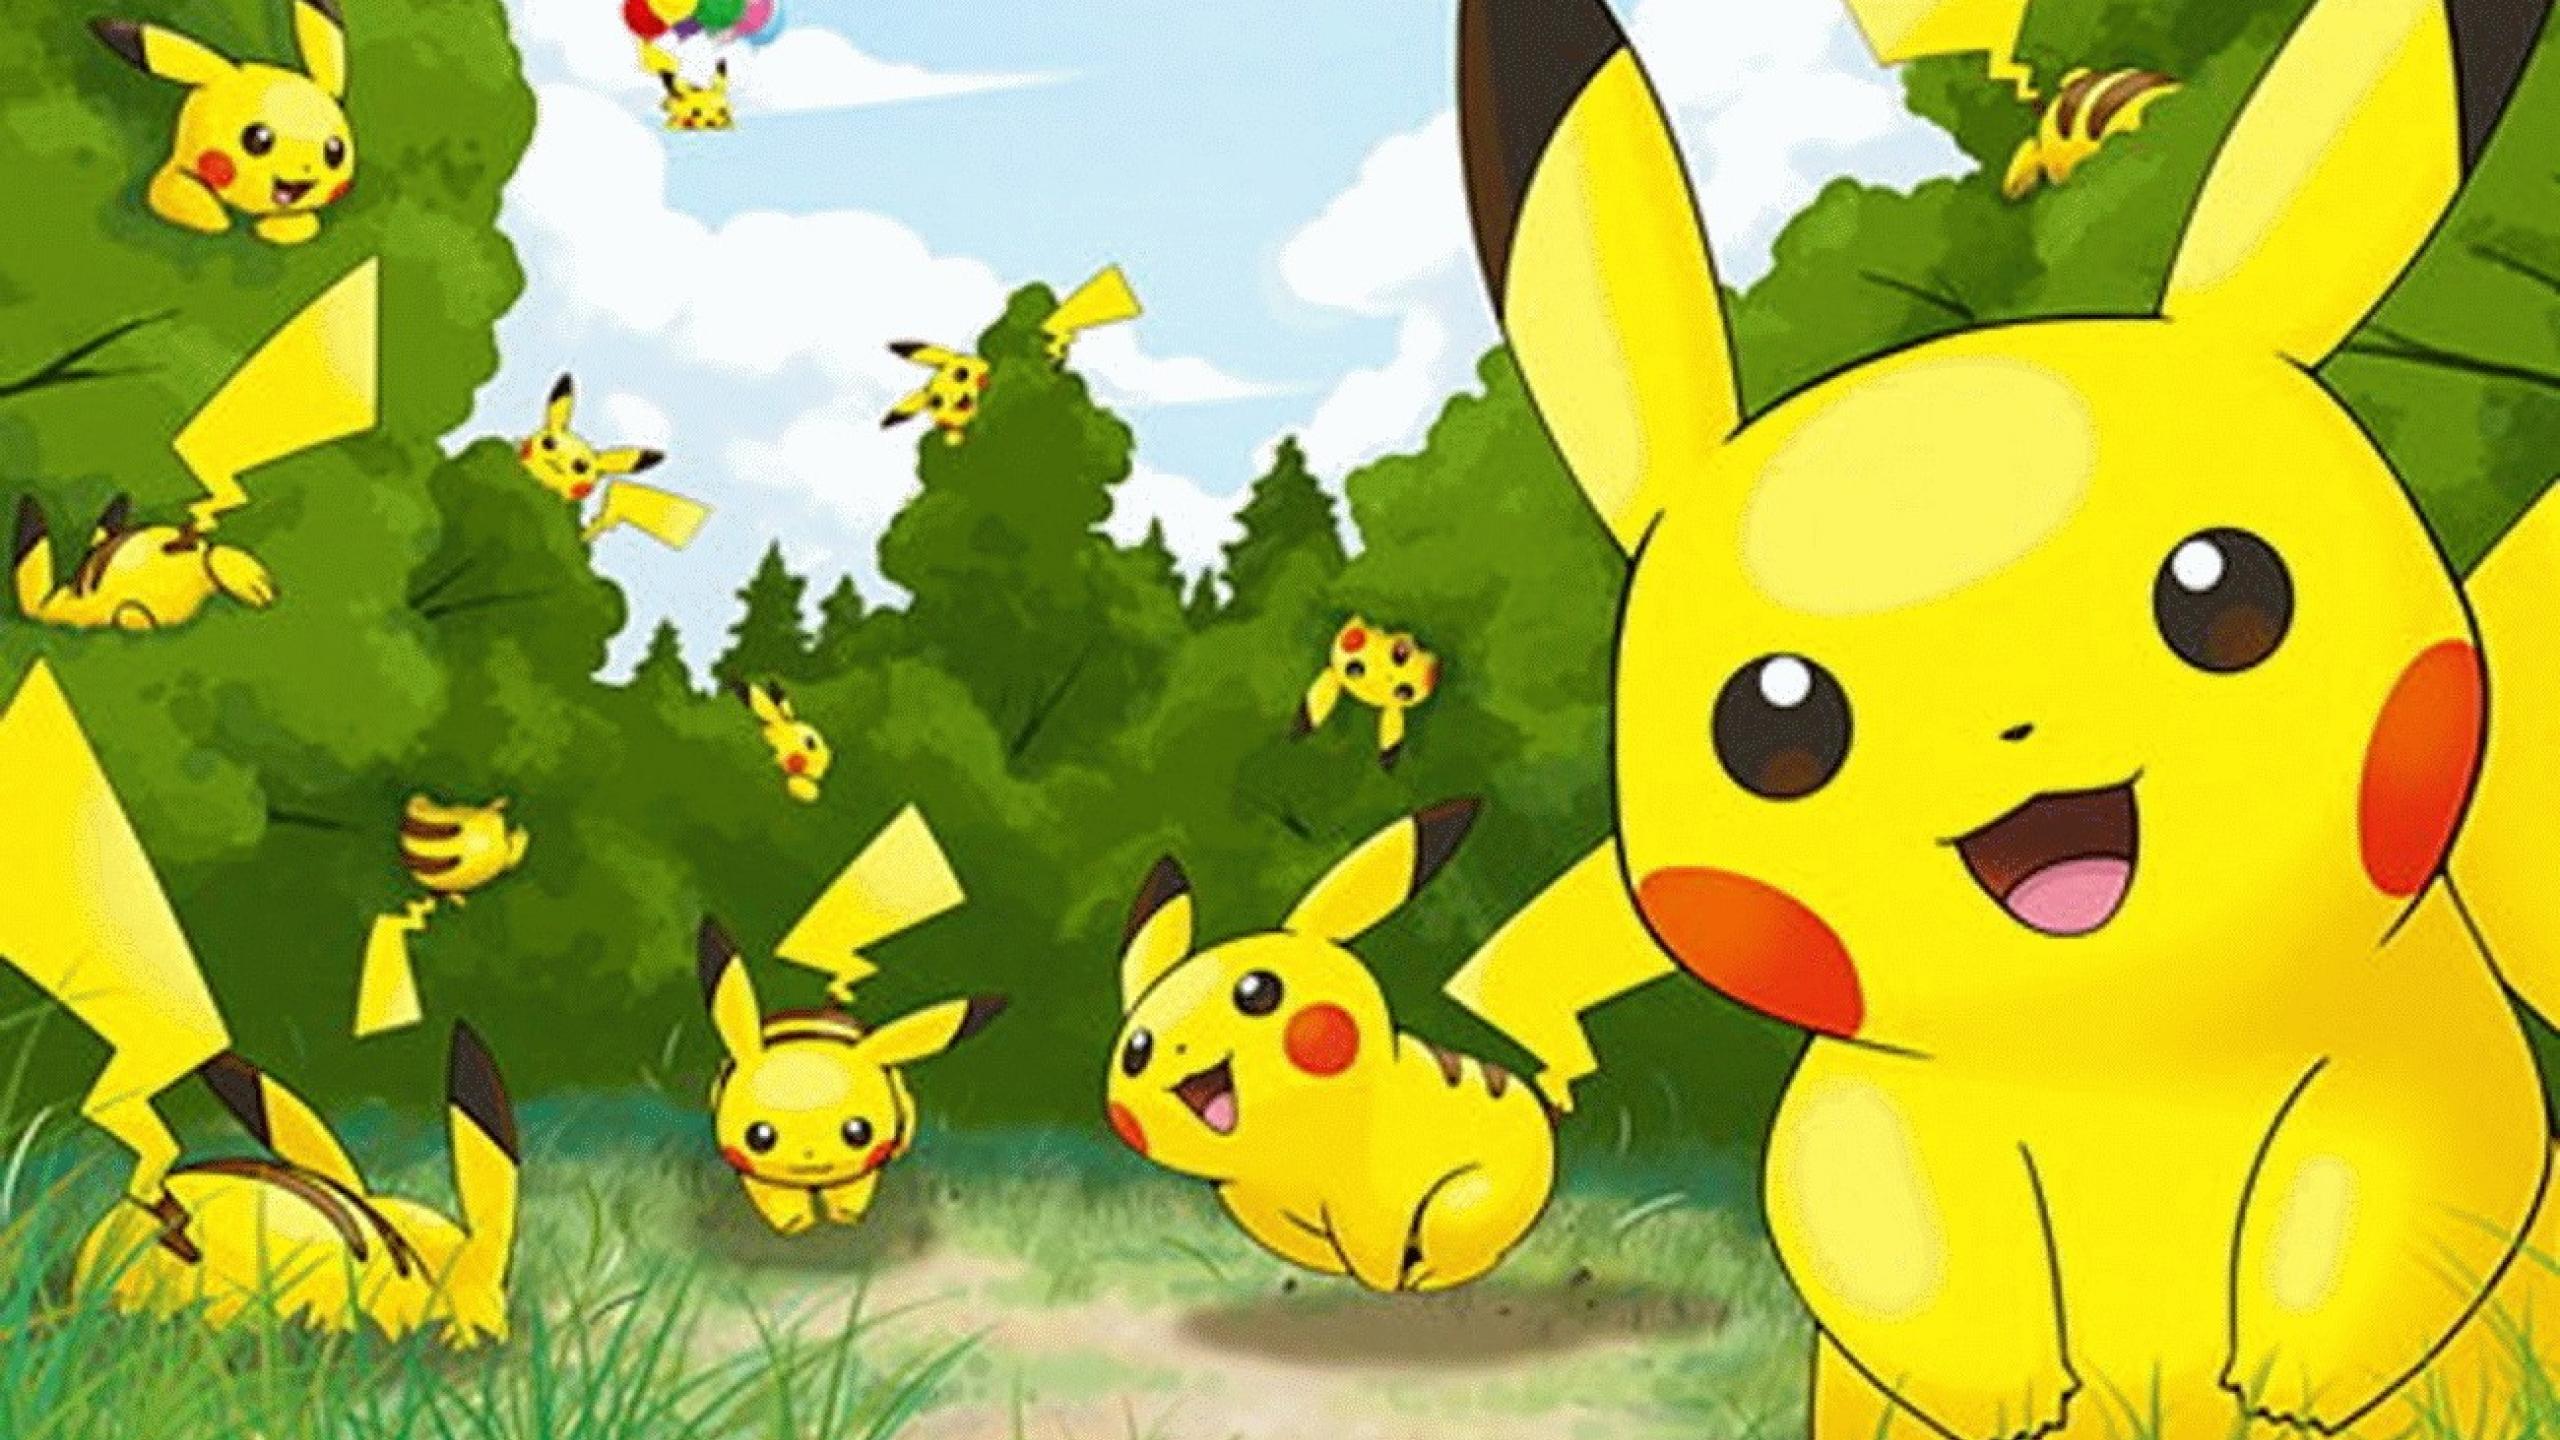 4K Wallpaper of Pokemon Go Pikachu  HD Wallpapers